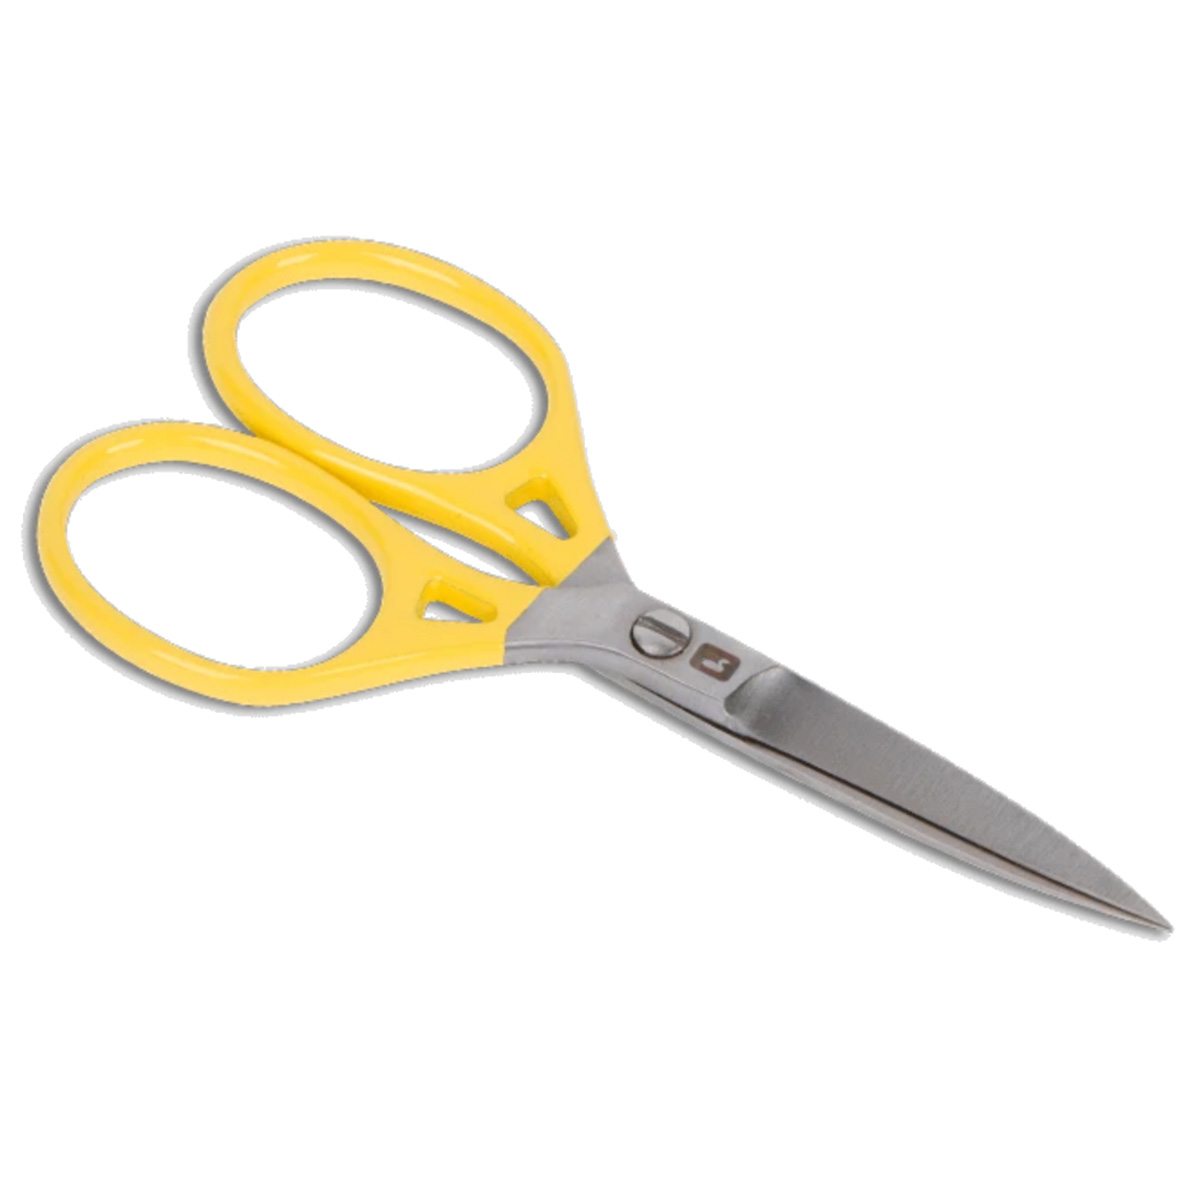 Loon Ergo 6 inch Prime Scissors